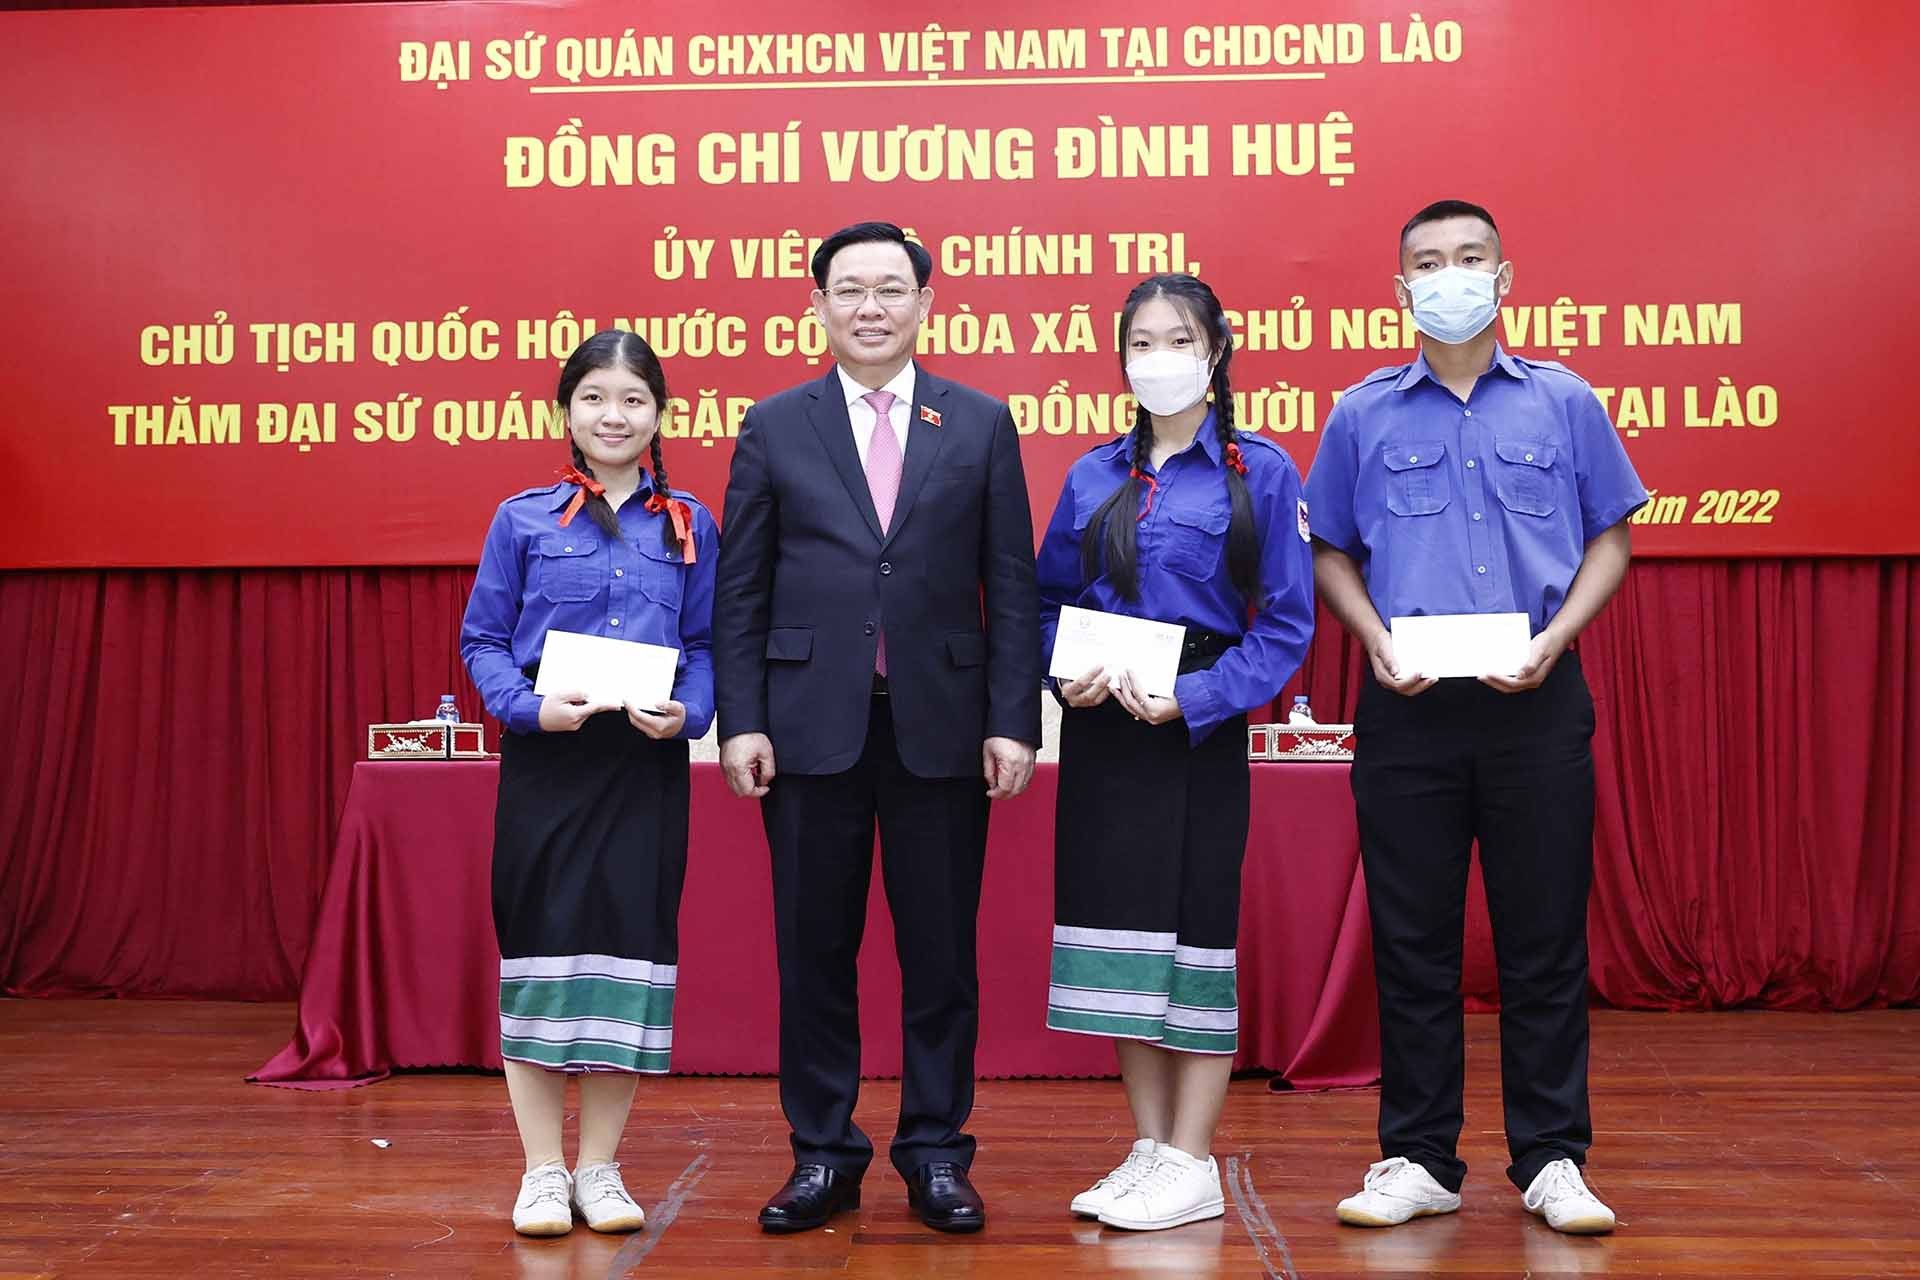 Chủ tịch Quốc hội Vương Đình Huệ tặng quà học sinh trong cộng đồng người Việt Nam tại Lào. (Nguồn: TTXVN)